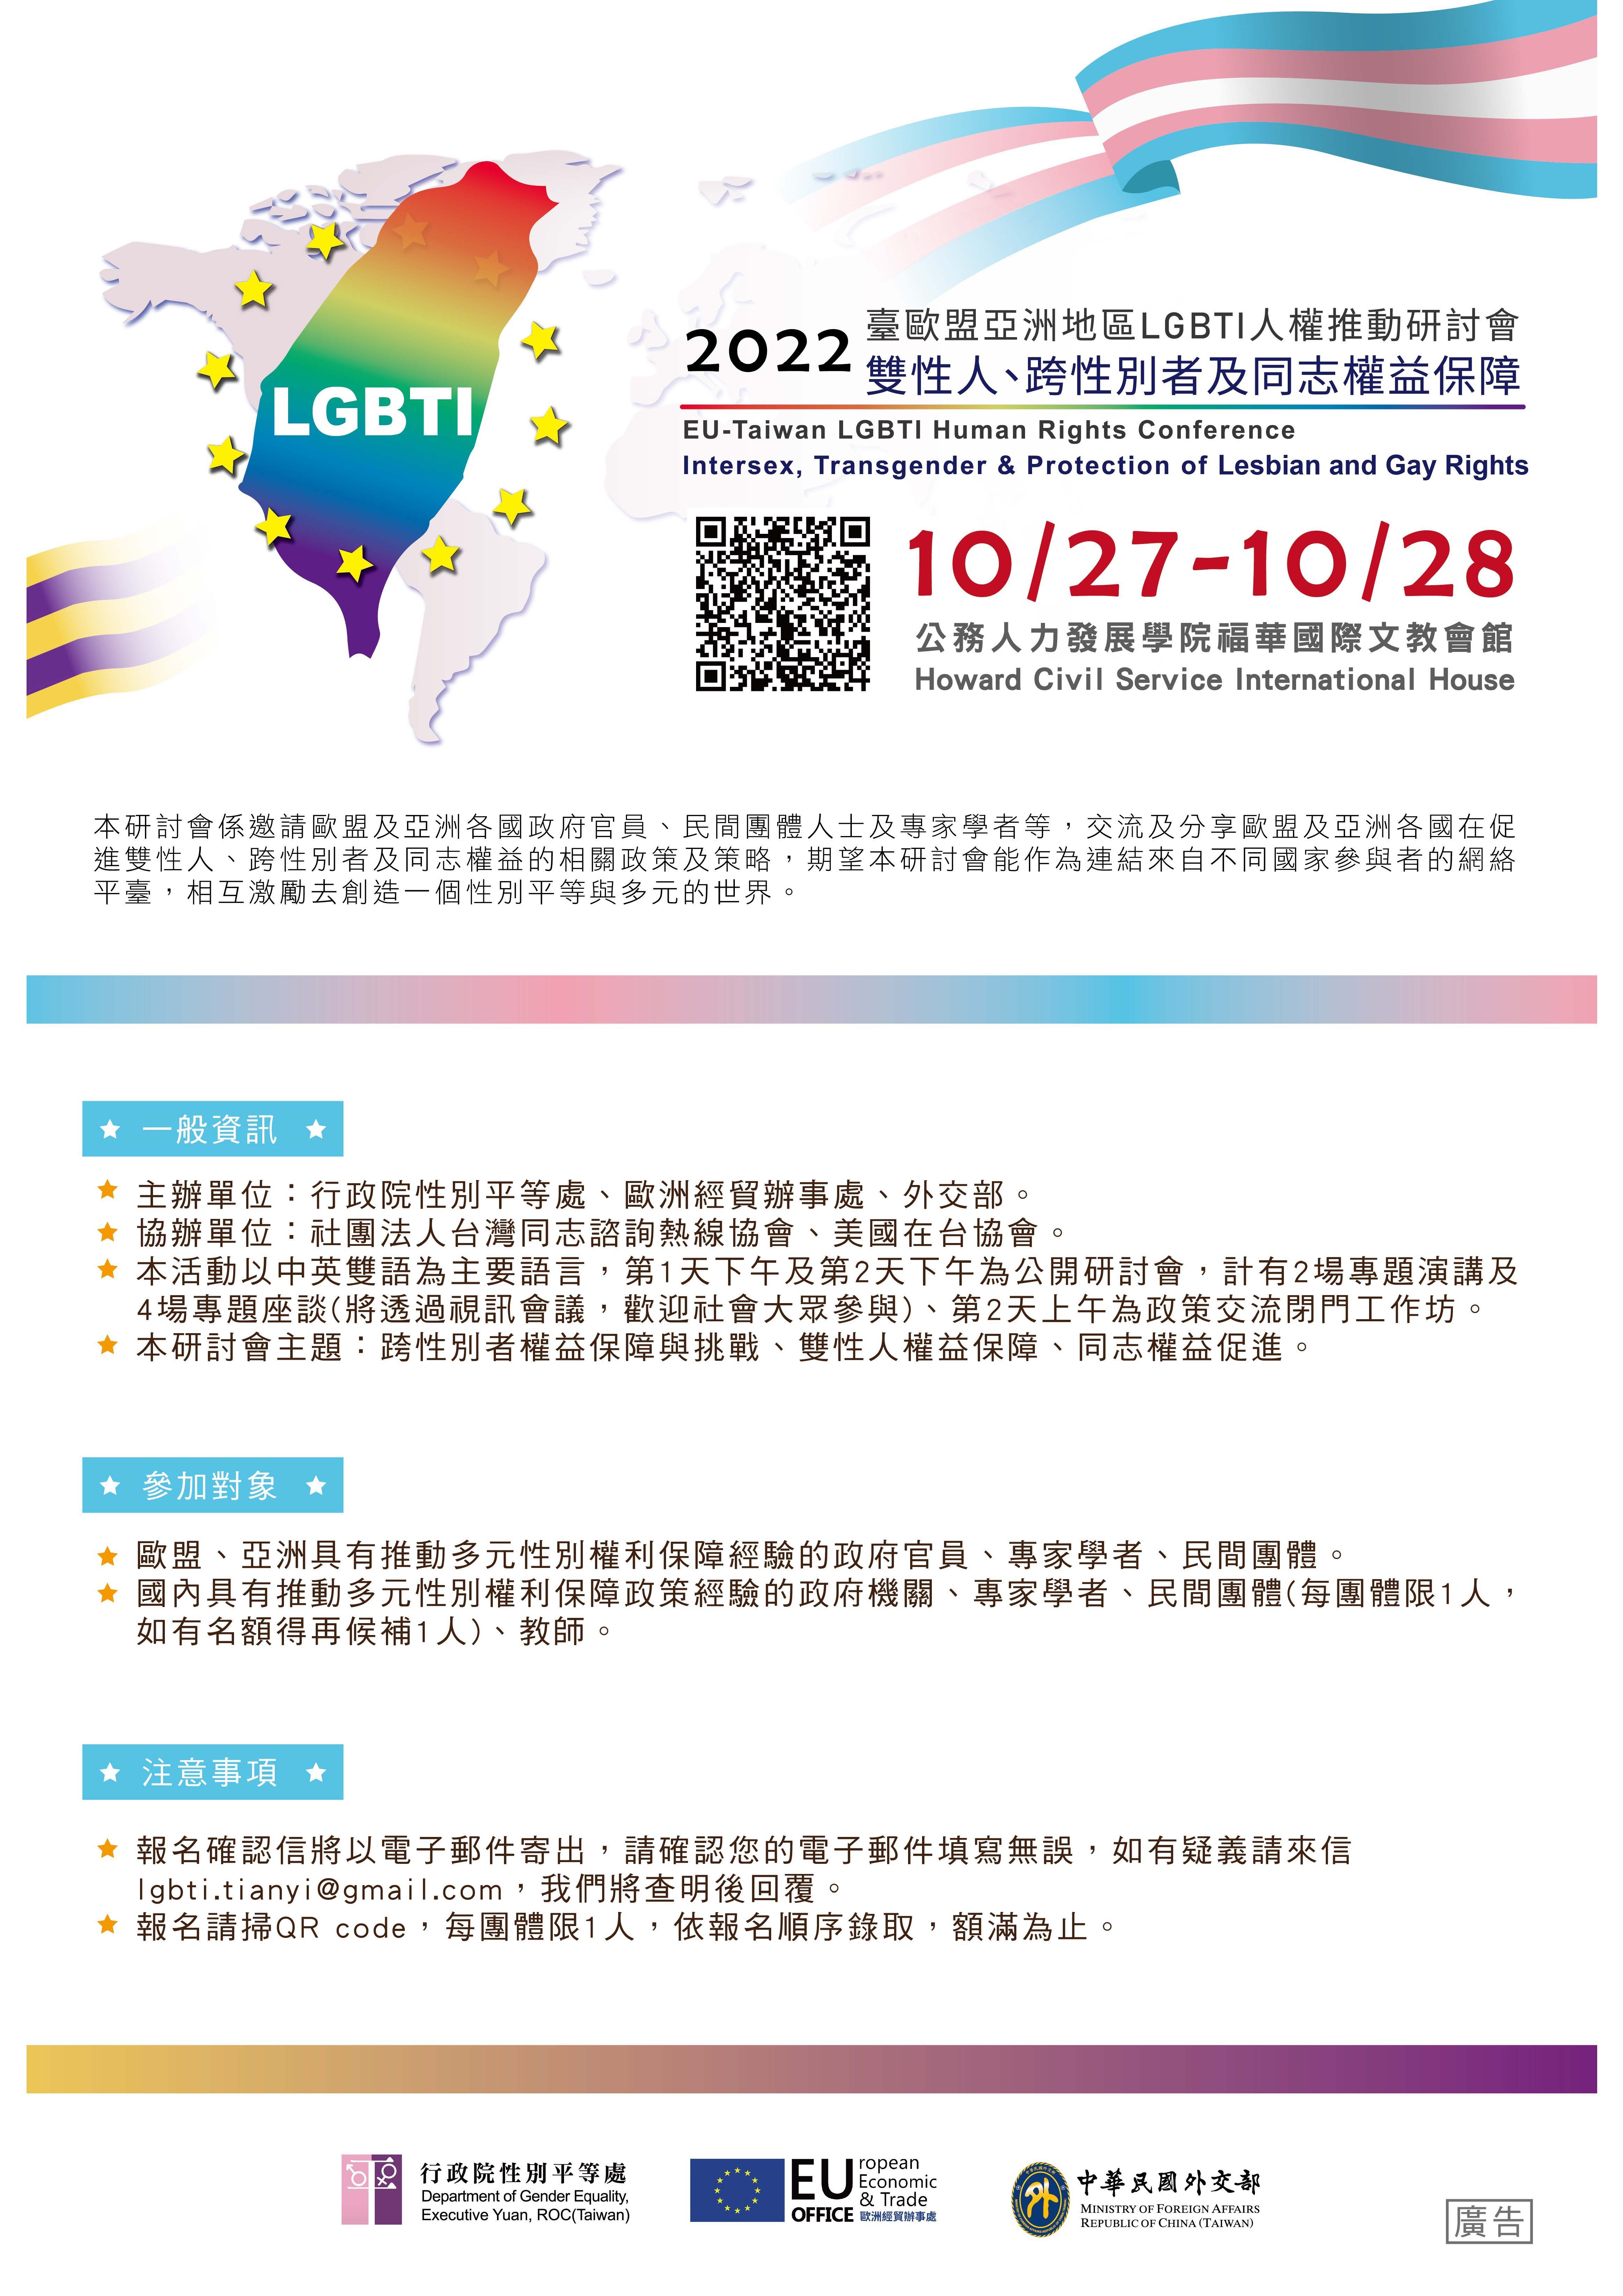 2022年臺歐盟亞洲地區LGBTI人權推動研討會